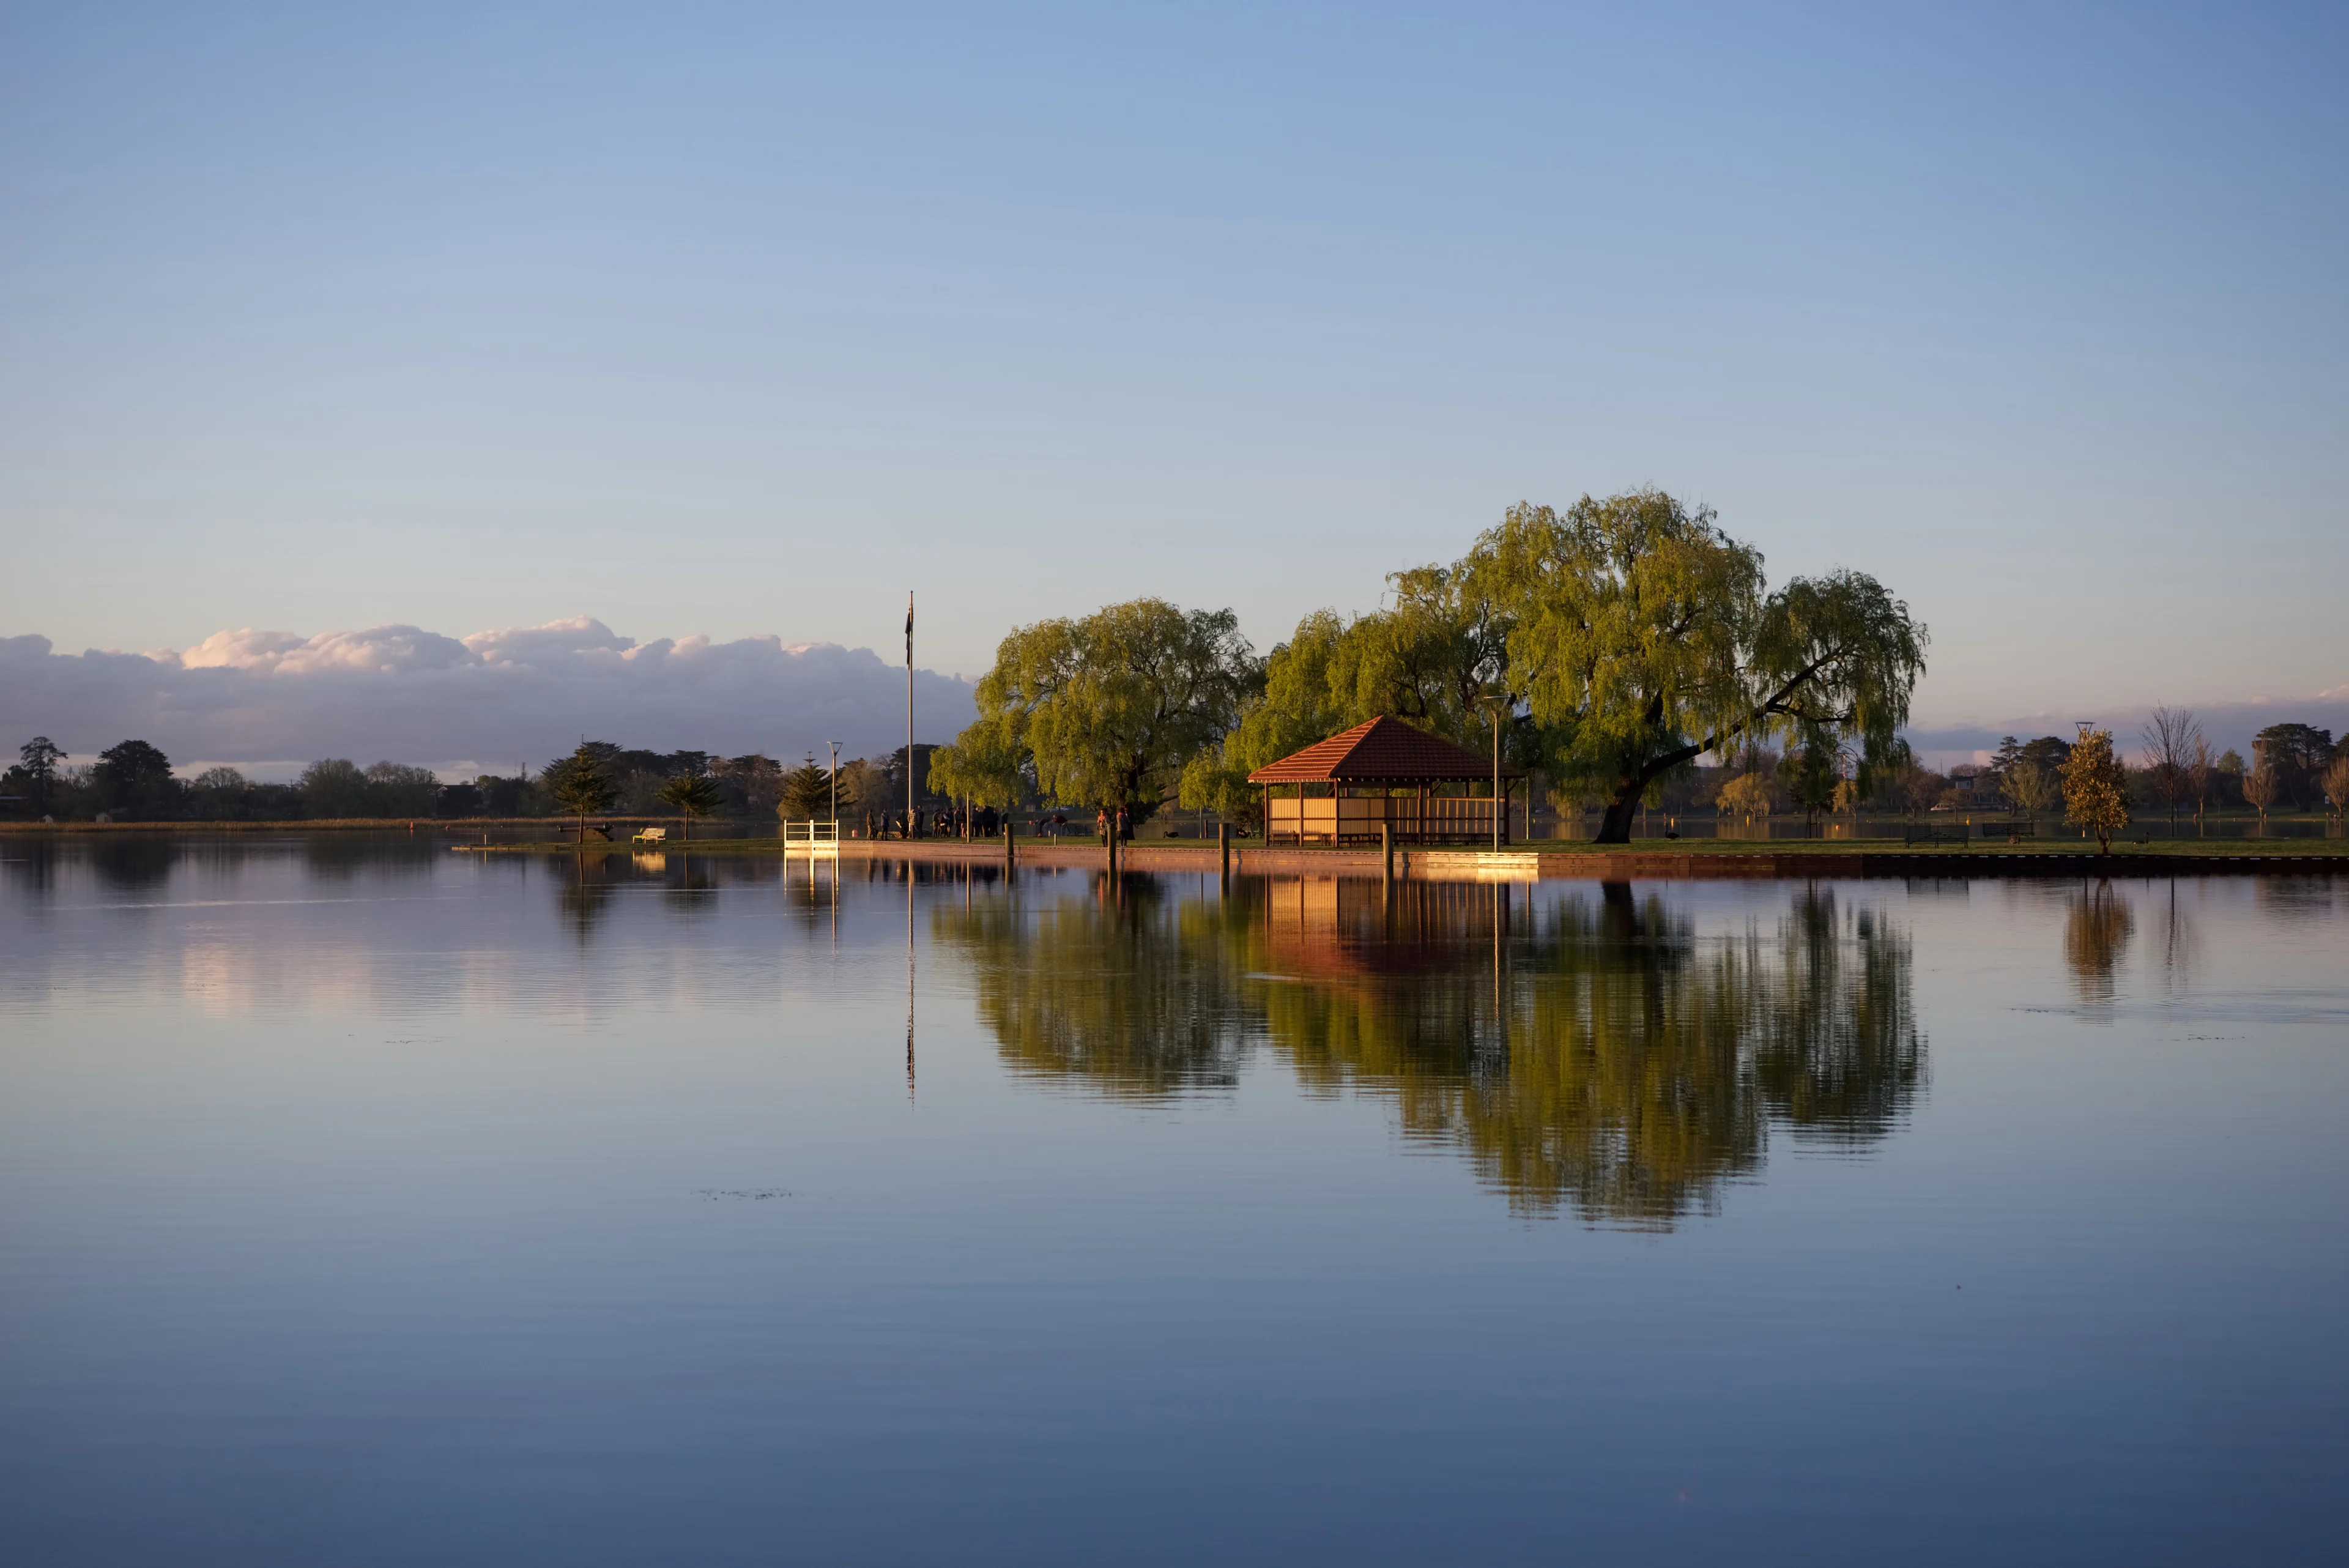 Reflection of the boat house on the lake at Lake Wondouree, Ballarat